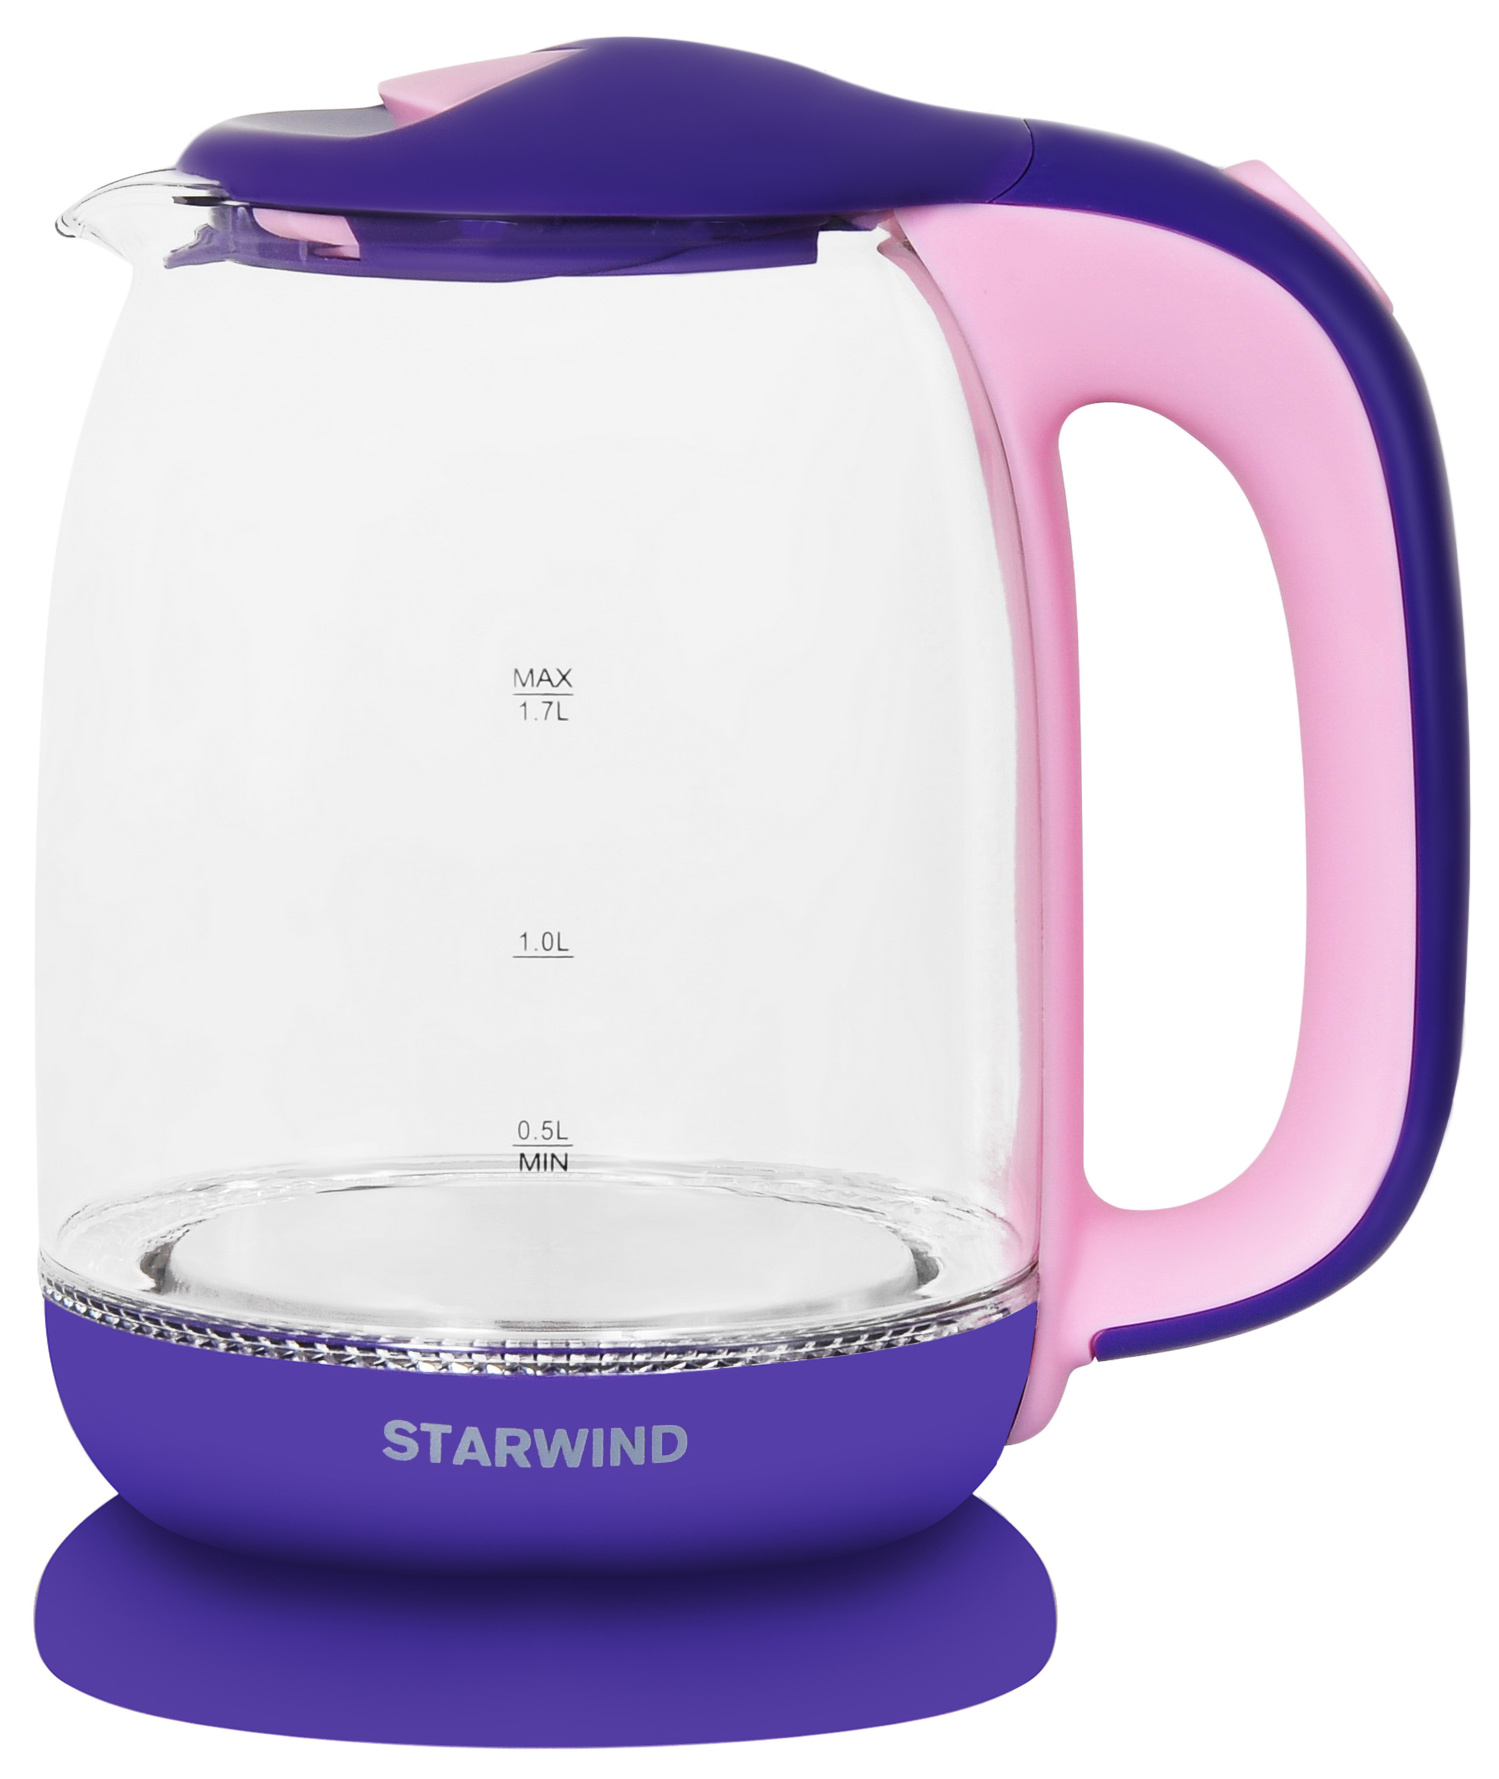 Чайник электрический STARWIND SKG1513 1.7 л фиолетовый, розовый, прозрачный buff бандана buff original child chrysta purple 126928 605 10 00 фиолетовый розовый